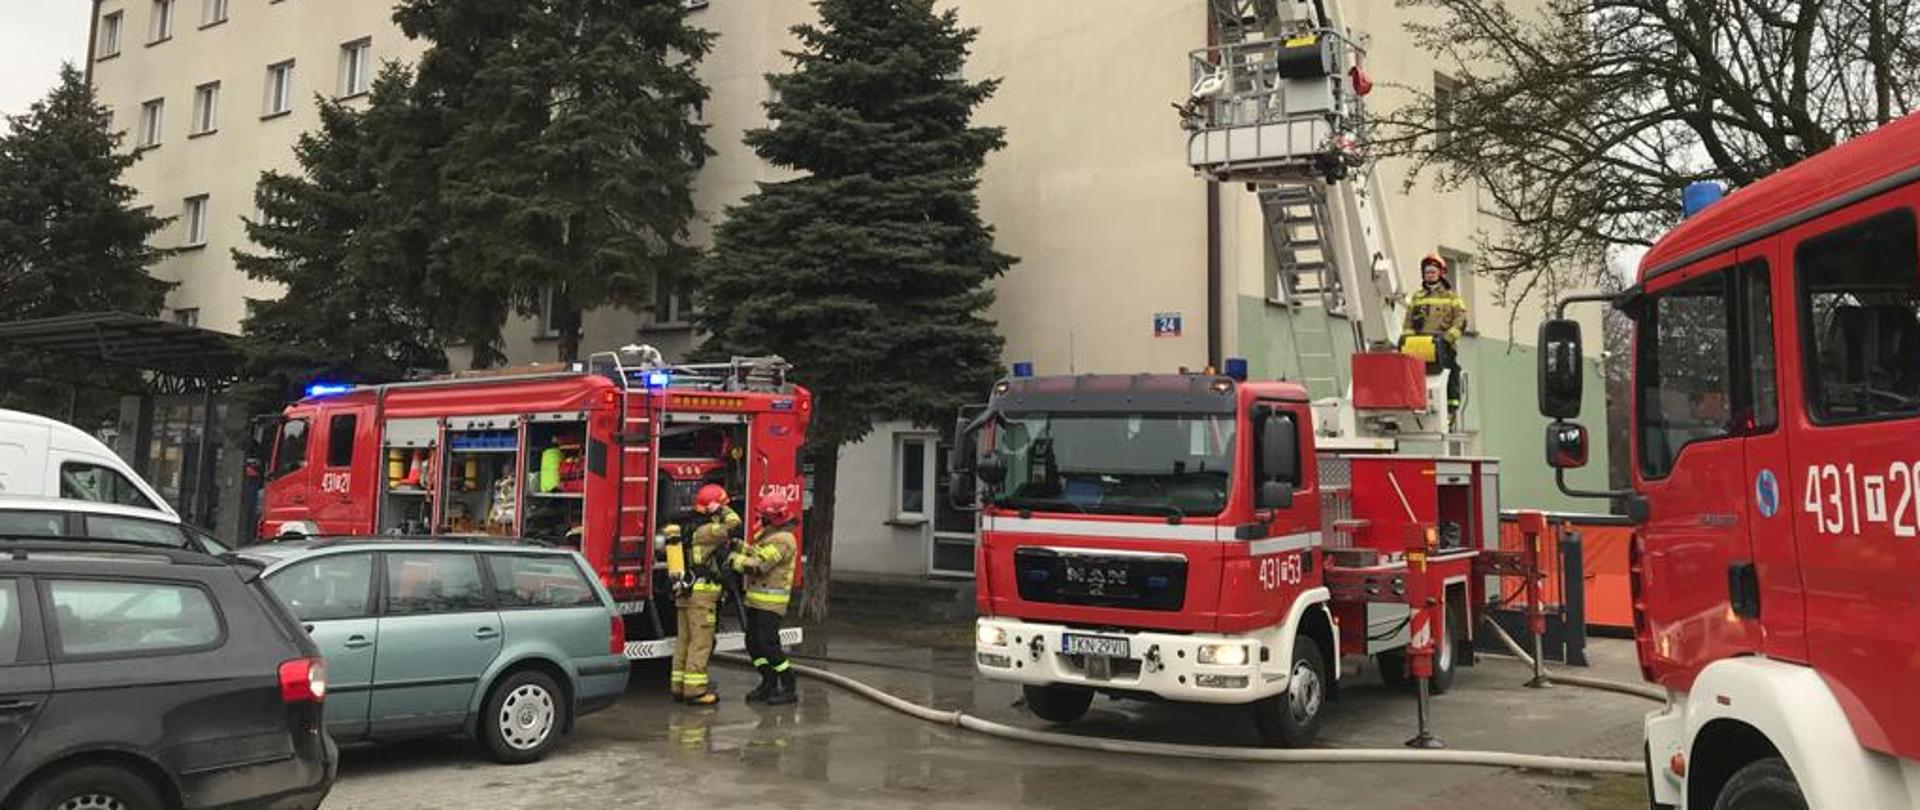 Trzy wozy strażackie stoją pod 4 piętrowym hotelem. Po środku stoi podnośnik którym strażacy próbowali ewakuować 80 letniego mężczyznę.